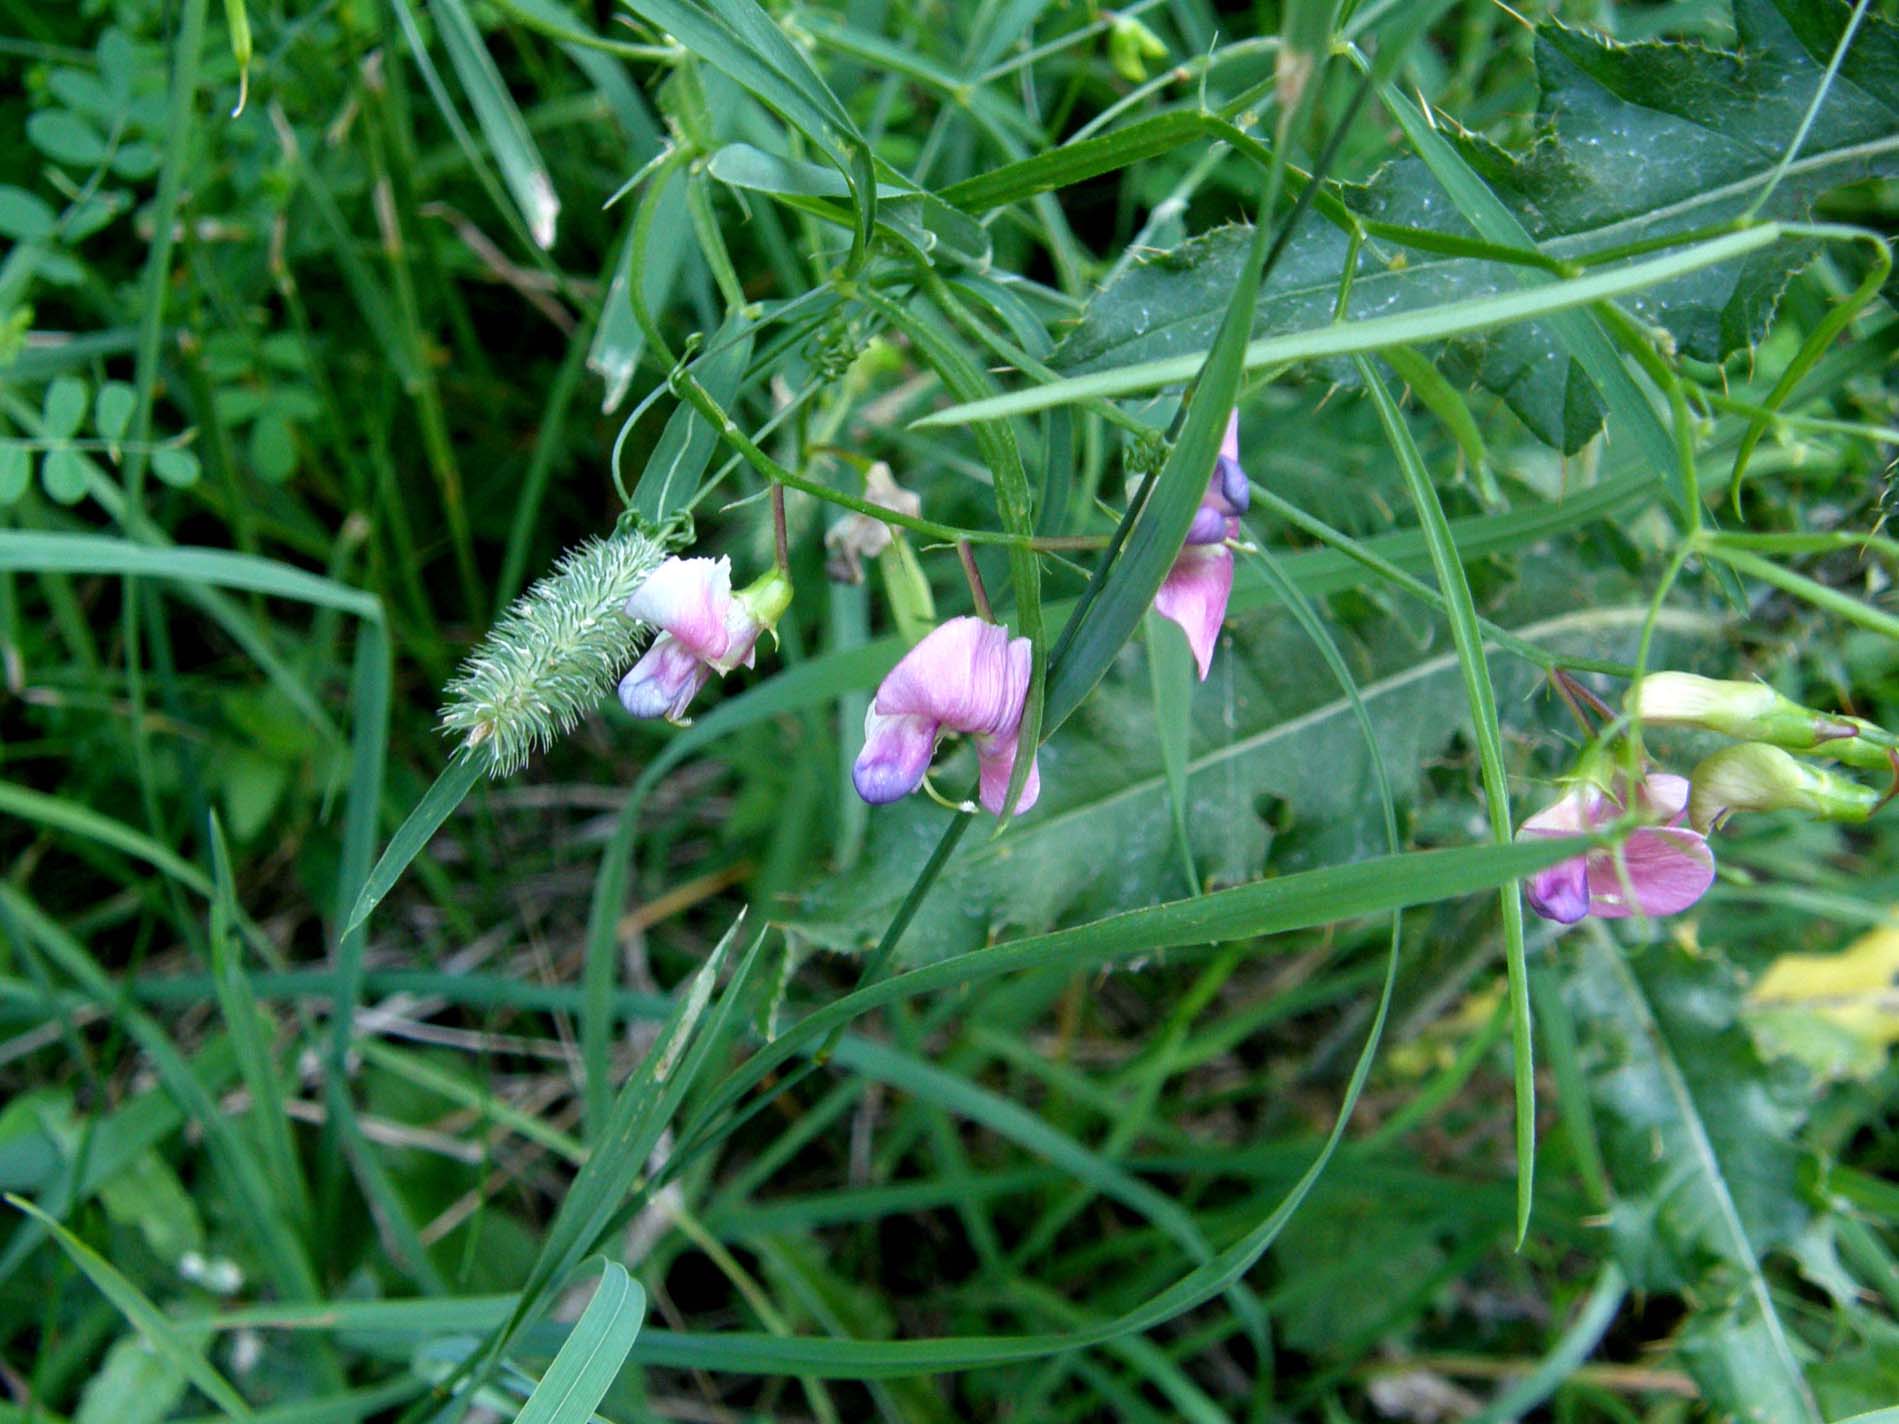 Lathyrus sp. (Fabaceae)